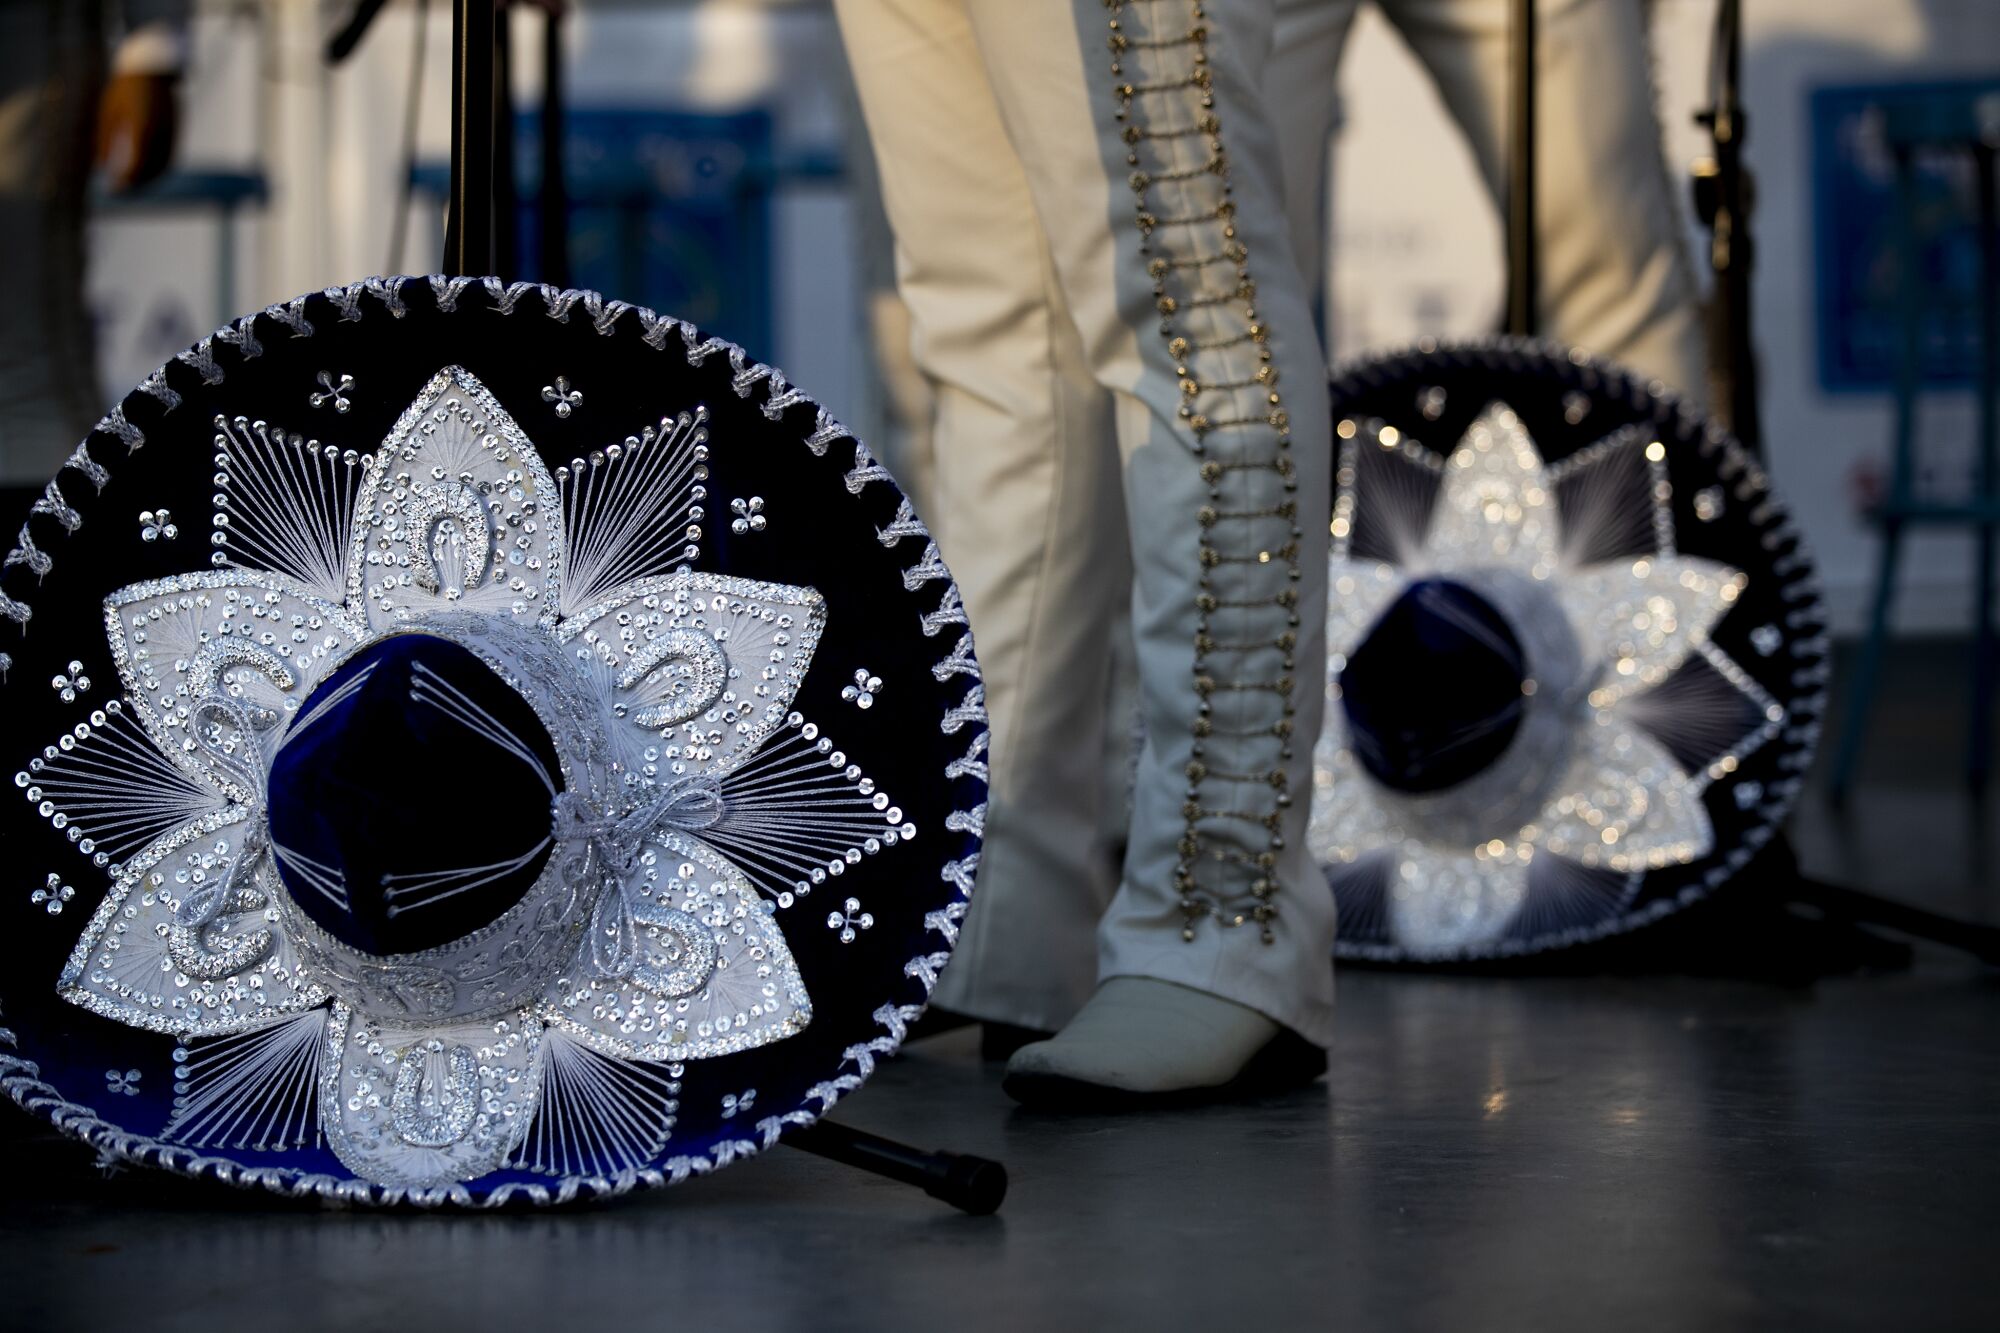 Des sombreros mexicains bleu Dodger sont affichés par chaque membre de Mariachi Garibaldi de Jaime Cuellar pendant qu'ils se produisent.